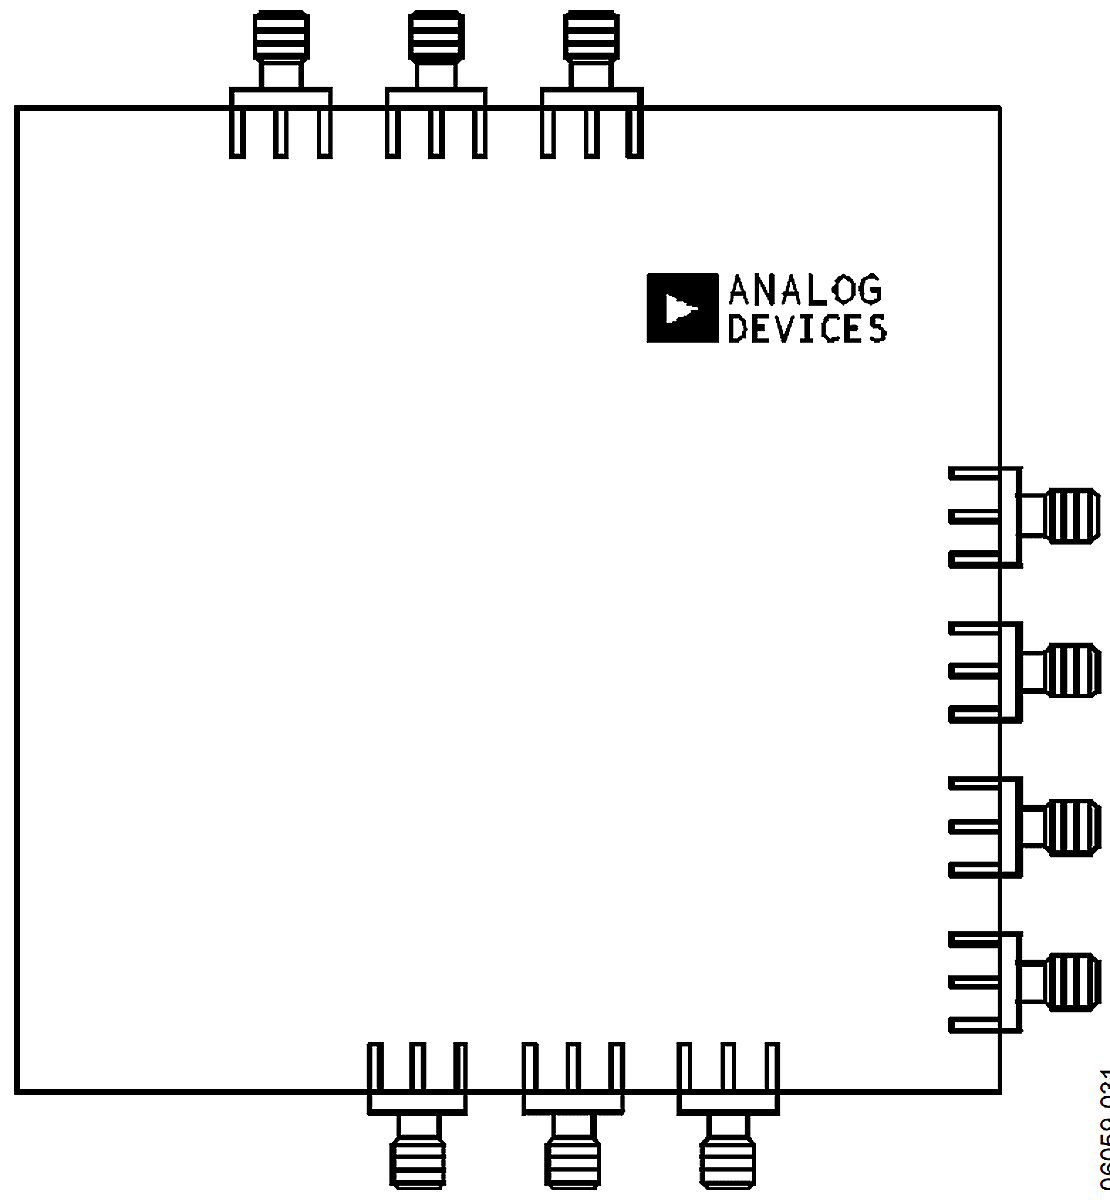 Placa de evaluación Multiplicador analógico Analog Devices - ADL5391-EVALZ